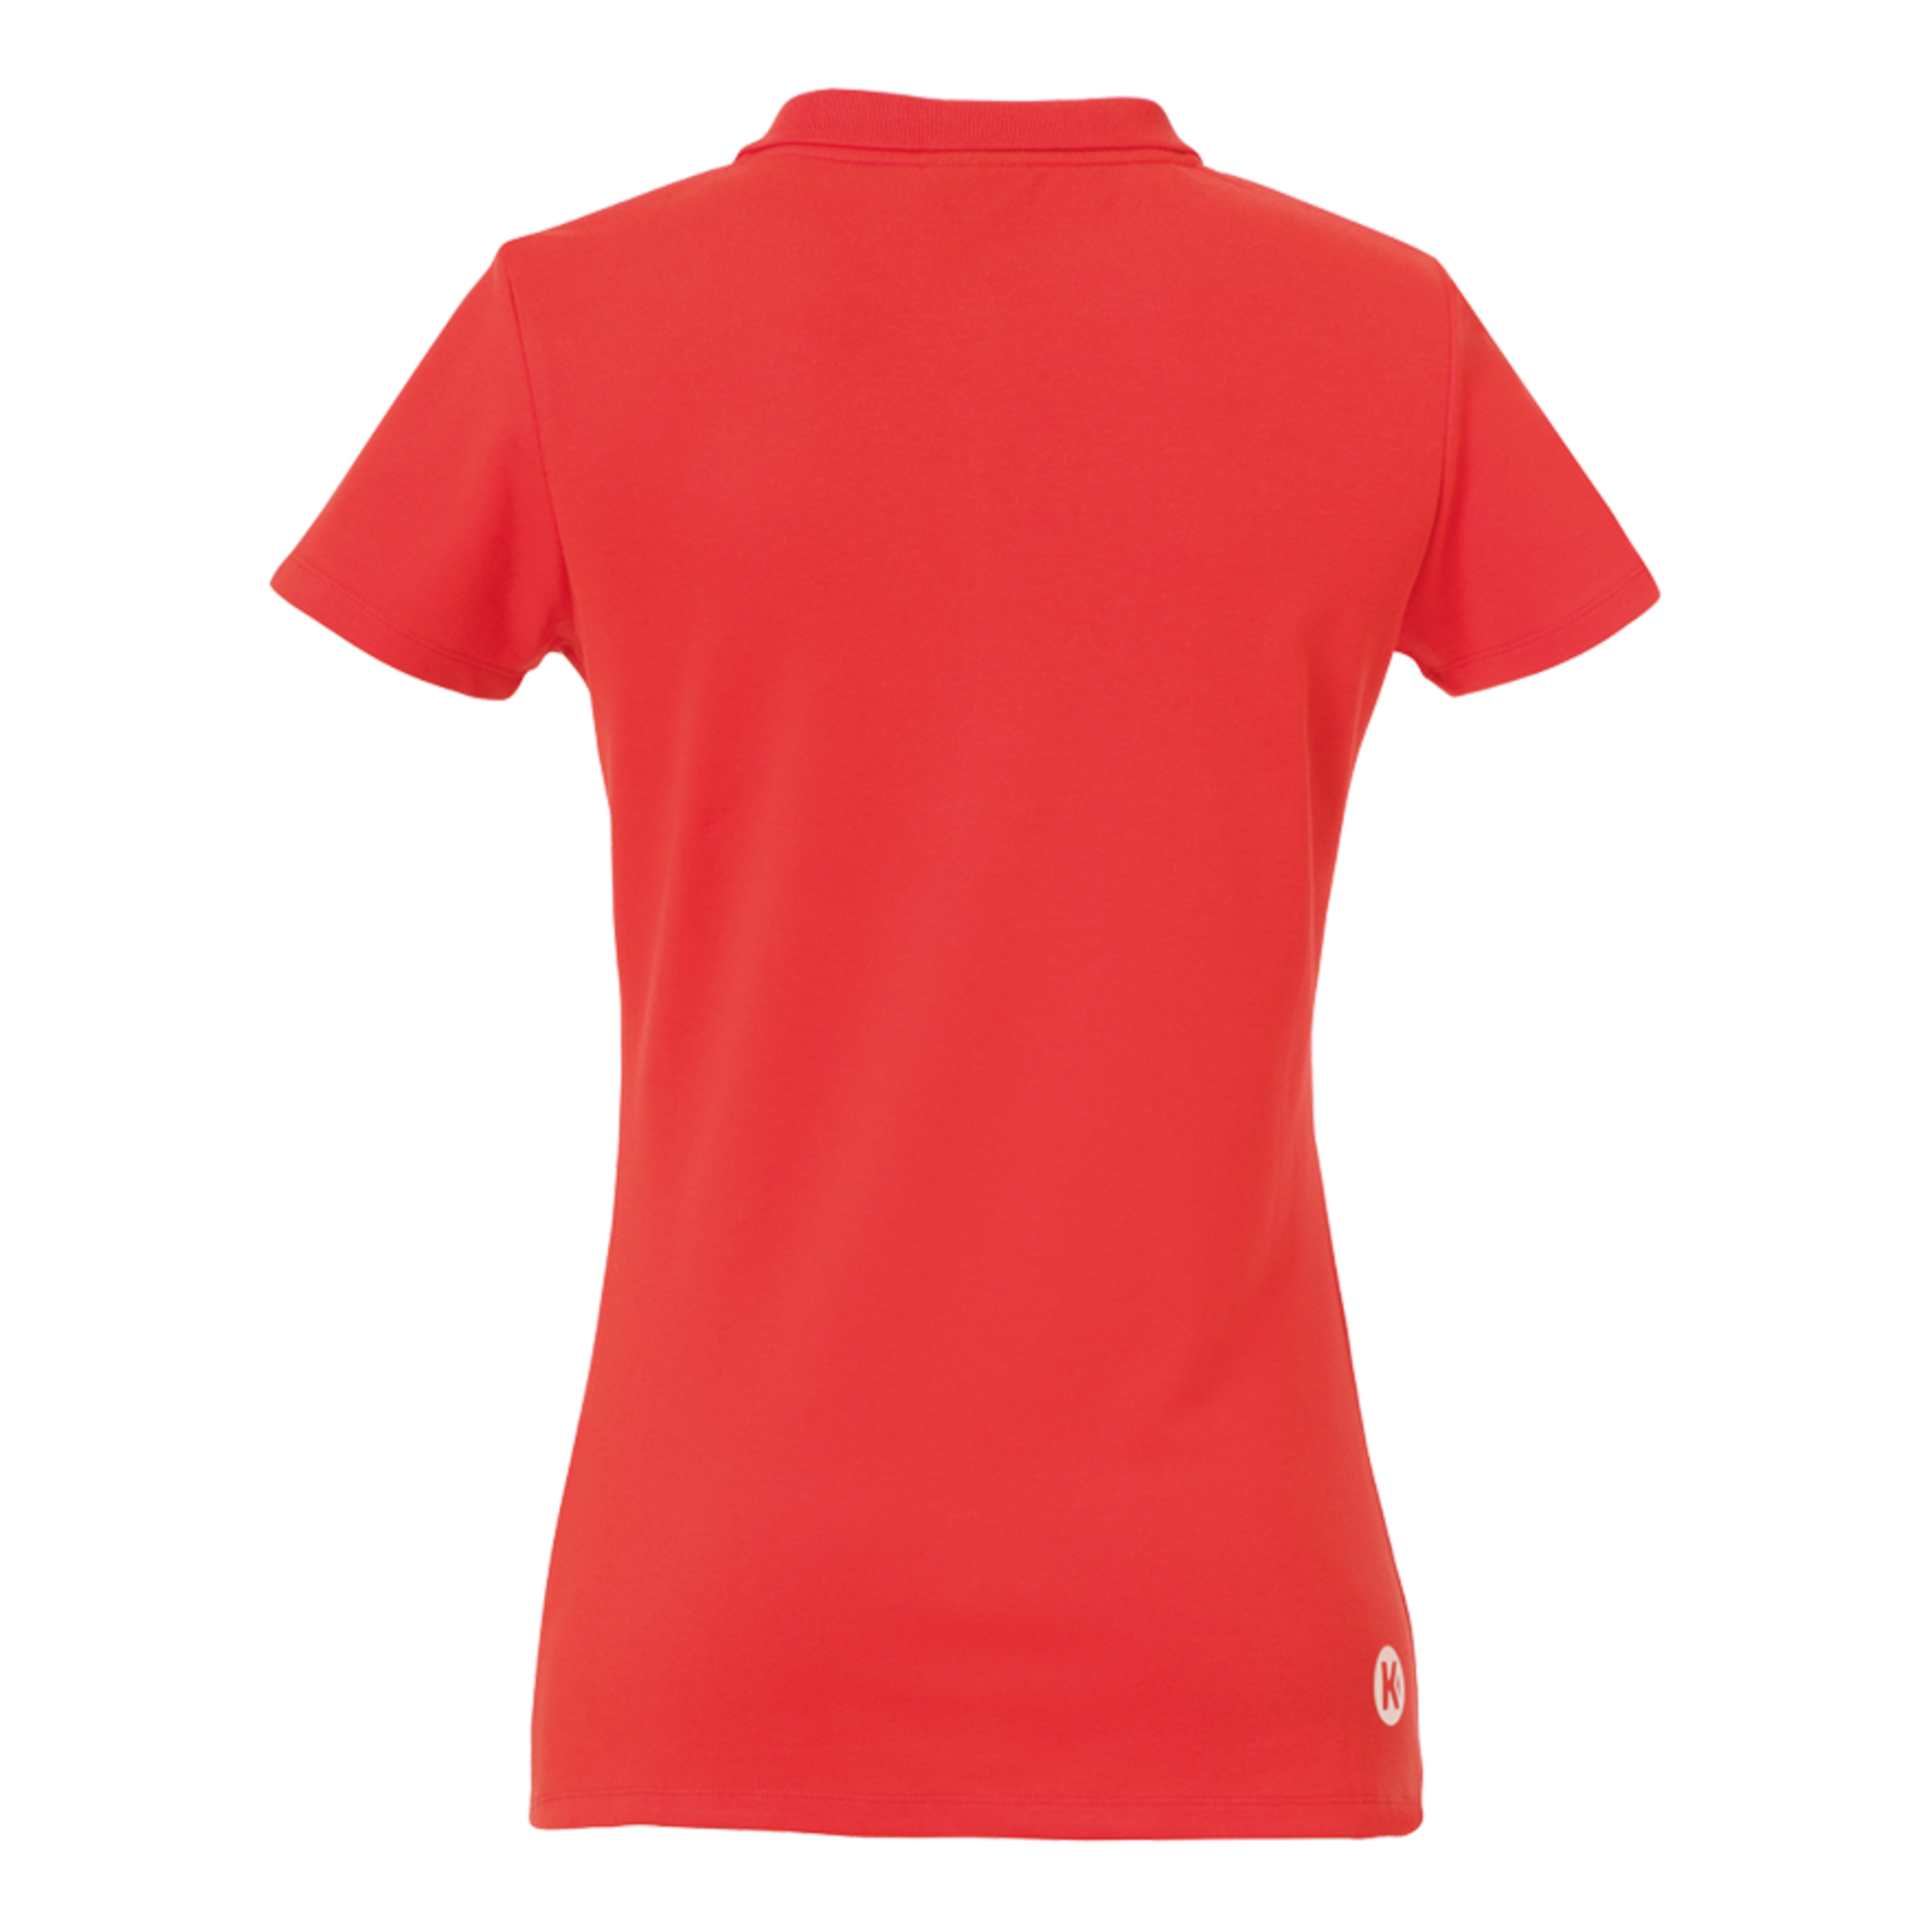 Polo Shirt De Mujer Rojo Kempa - rojo  MKP